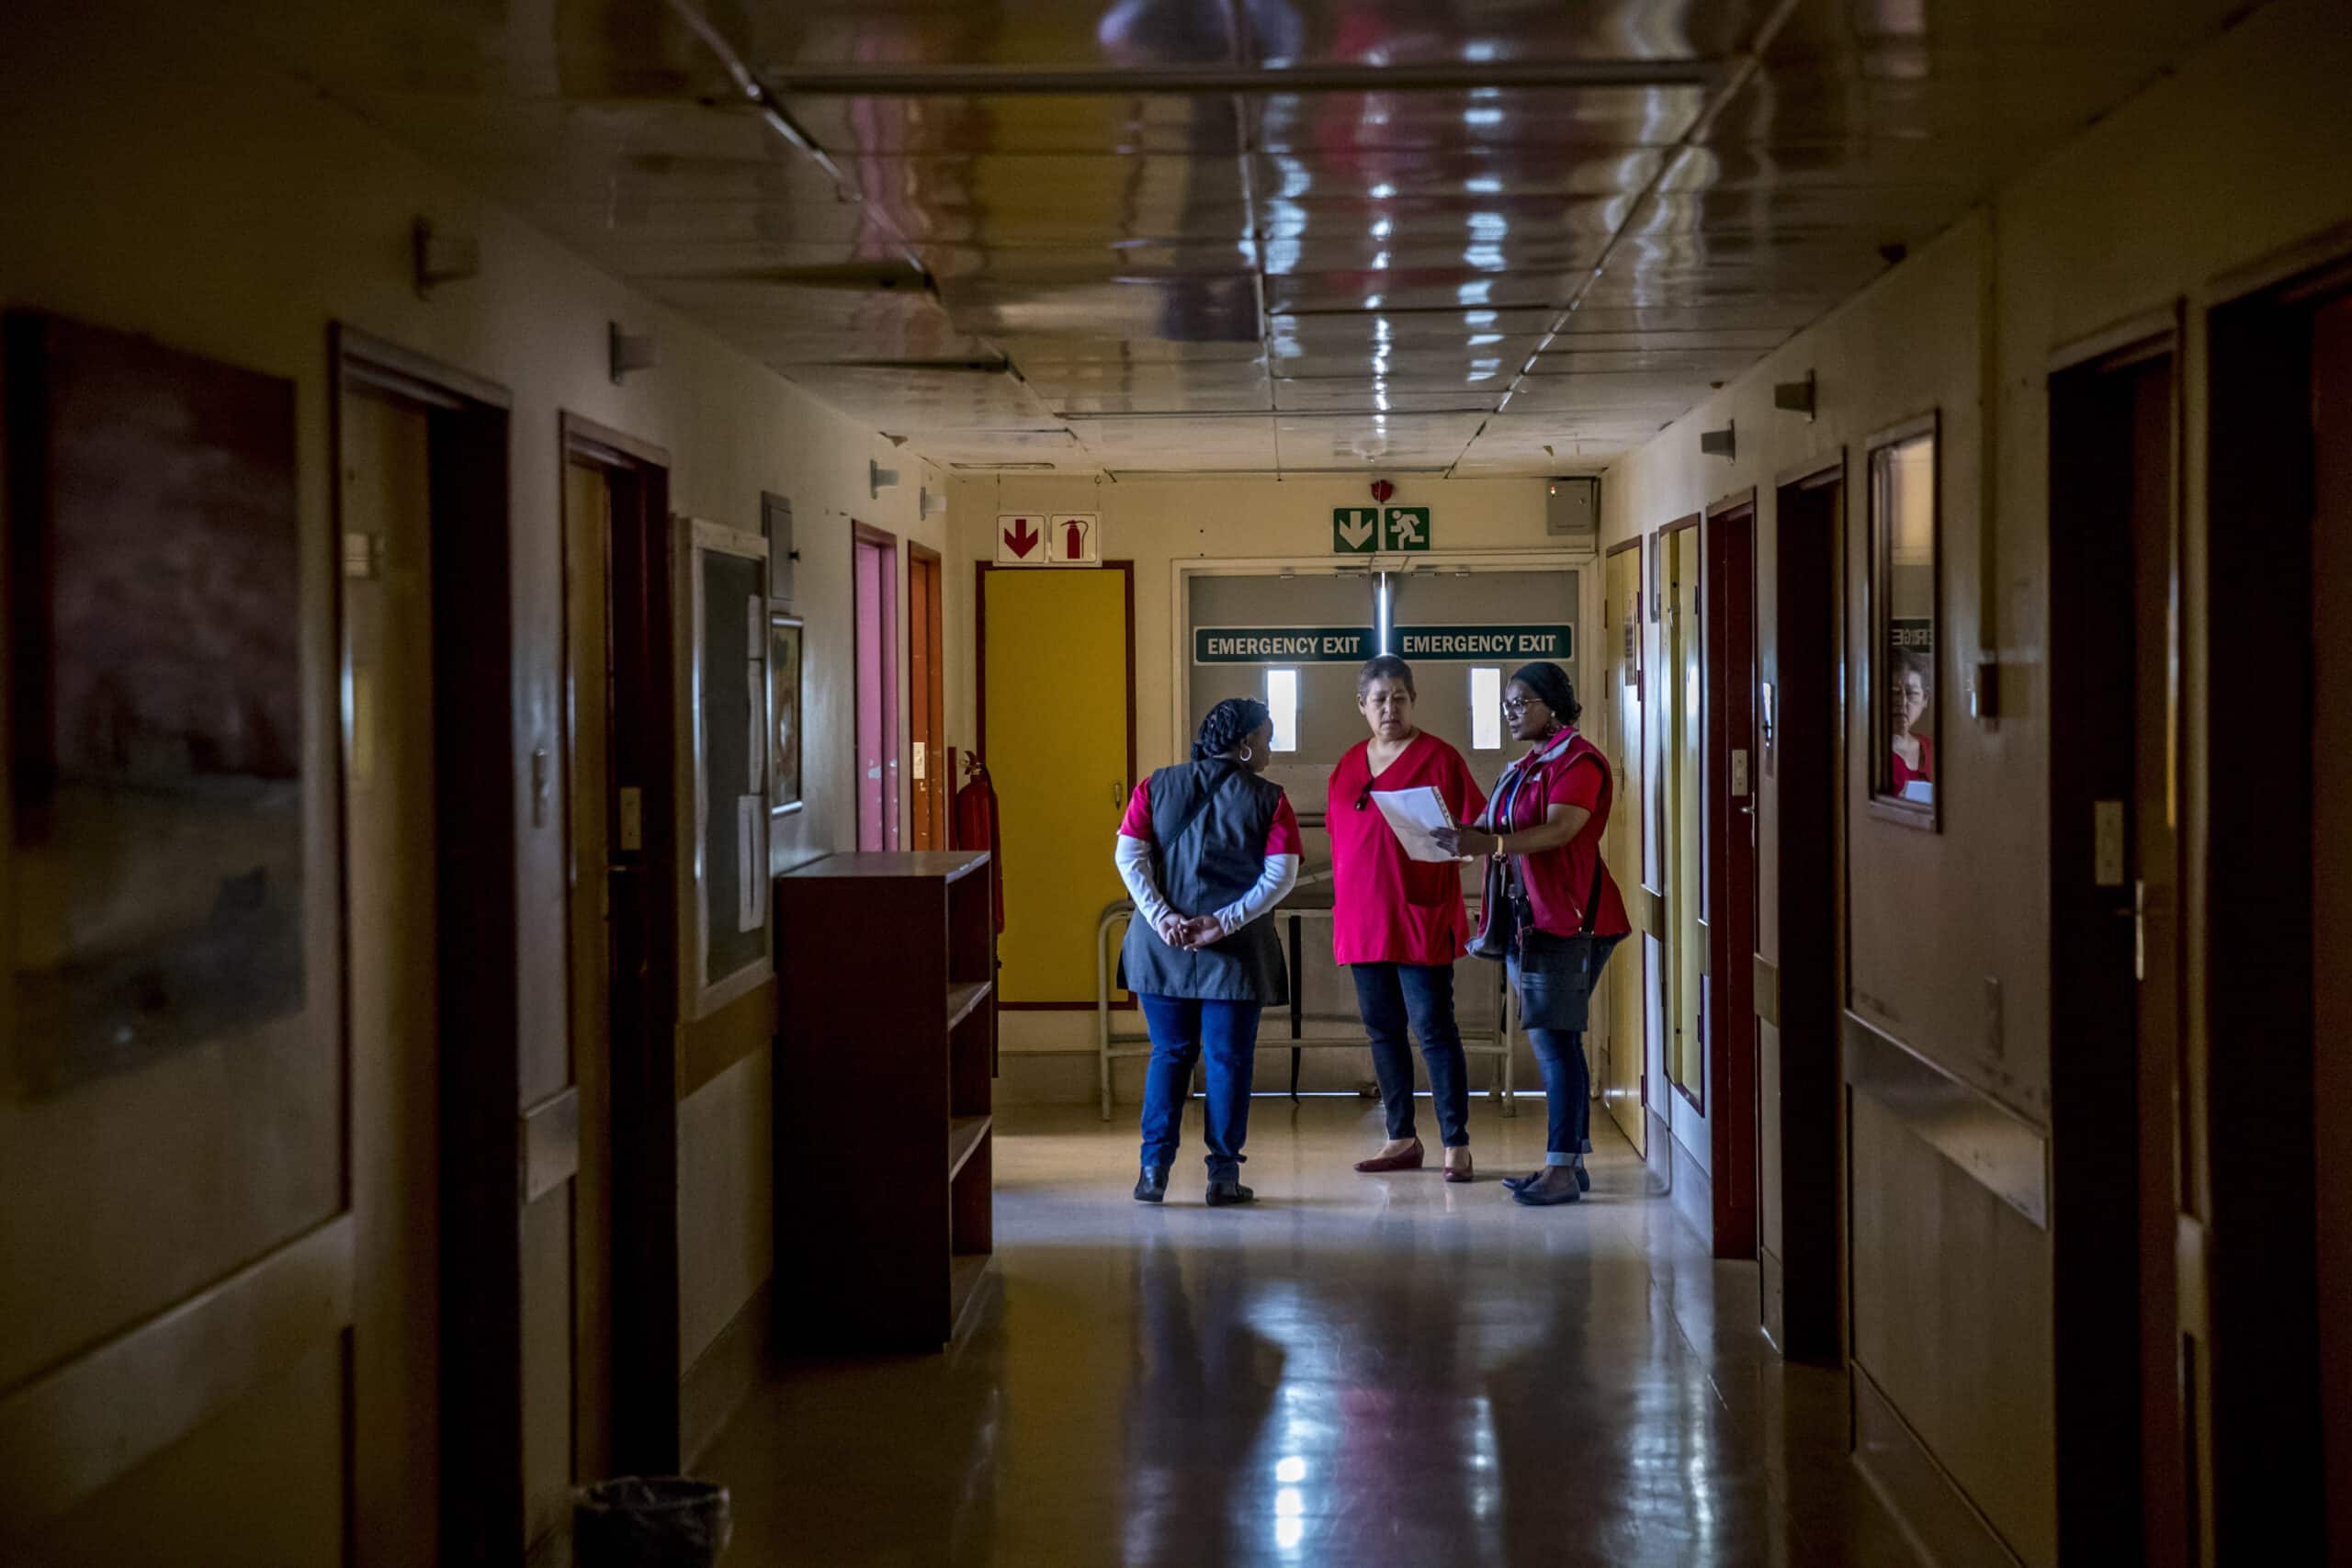 Drei medizinische Mitarbeiter besprechen Dokumente in einem Krankenhausflur bei schwacher Beleuchtung und sichtbaren Notausgangsschildern. © Fotografie Tomas Rodriguez